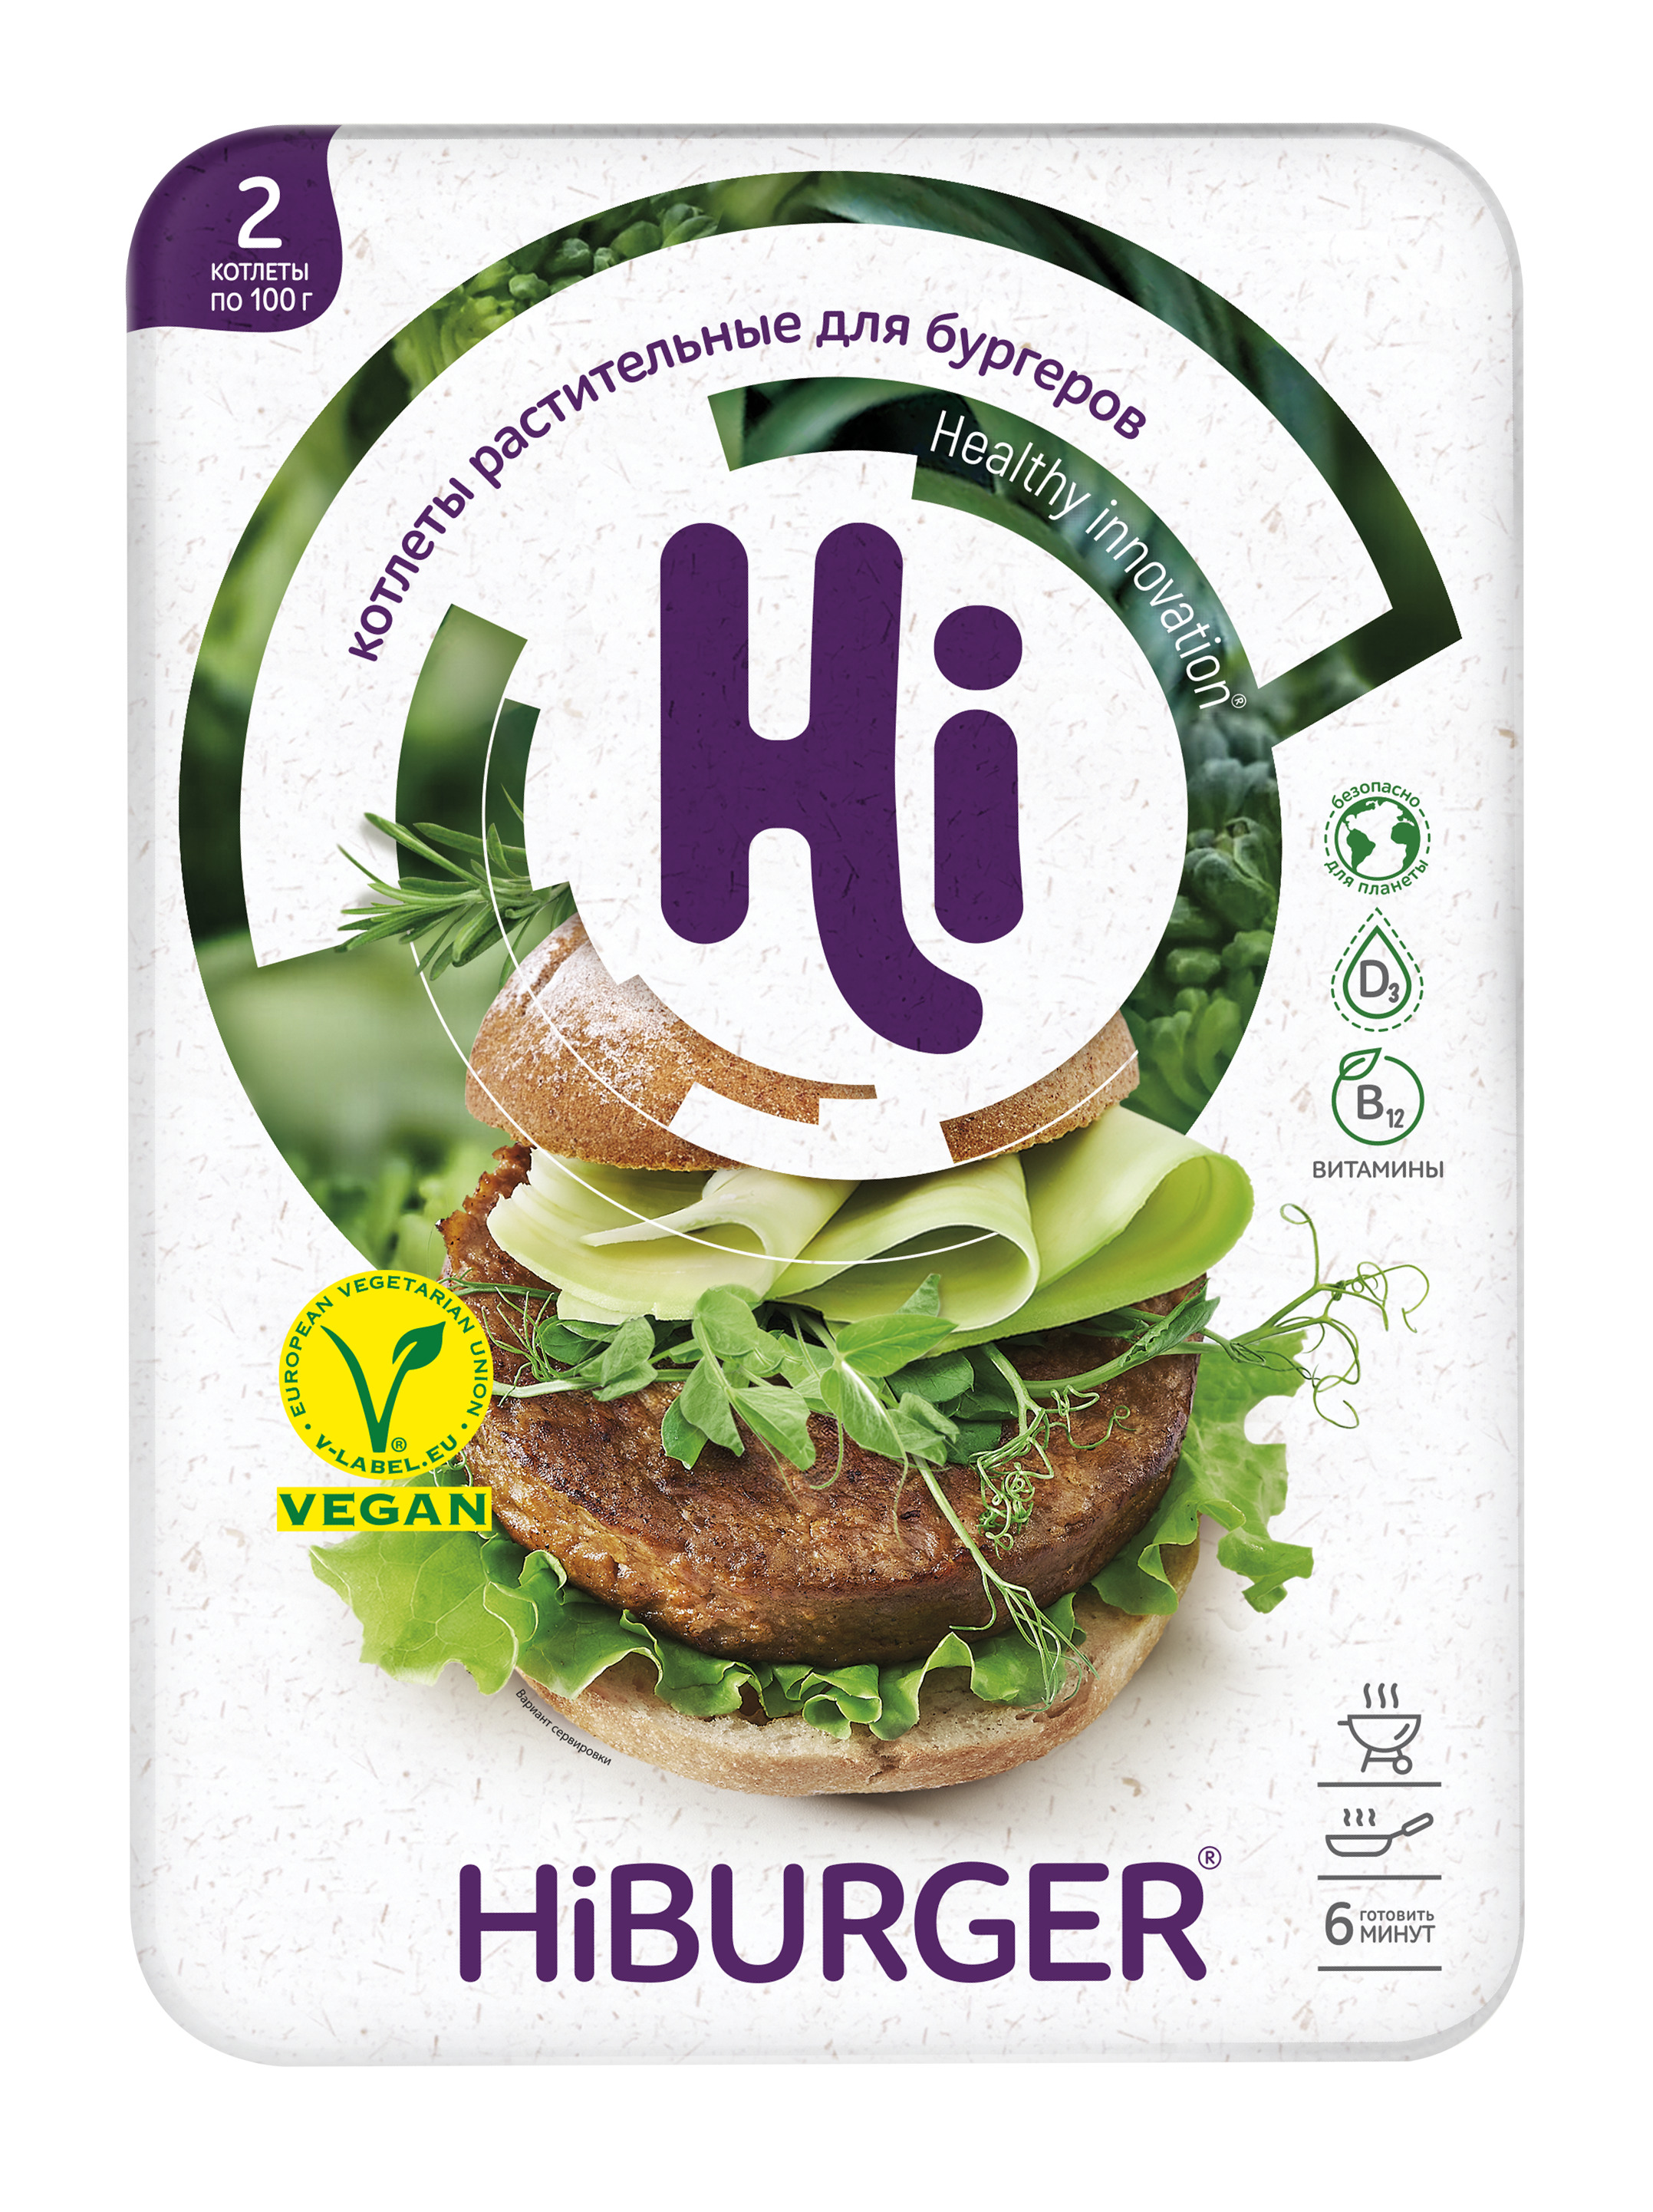 Котлеты из растительного белка Hi Хайбургер для бургеров замороженные 200 г